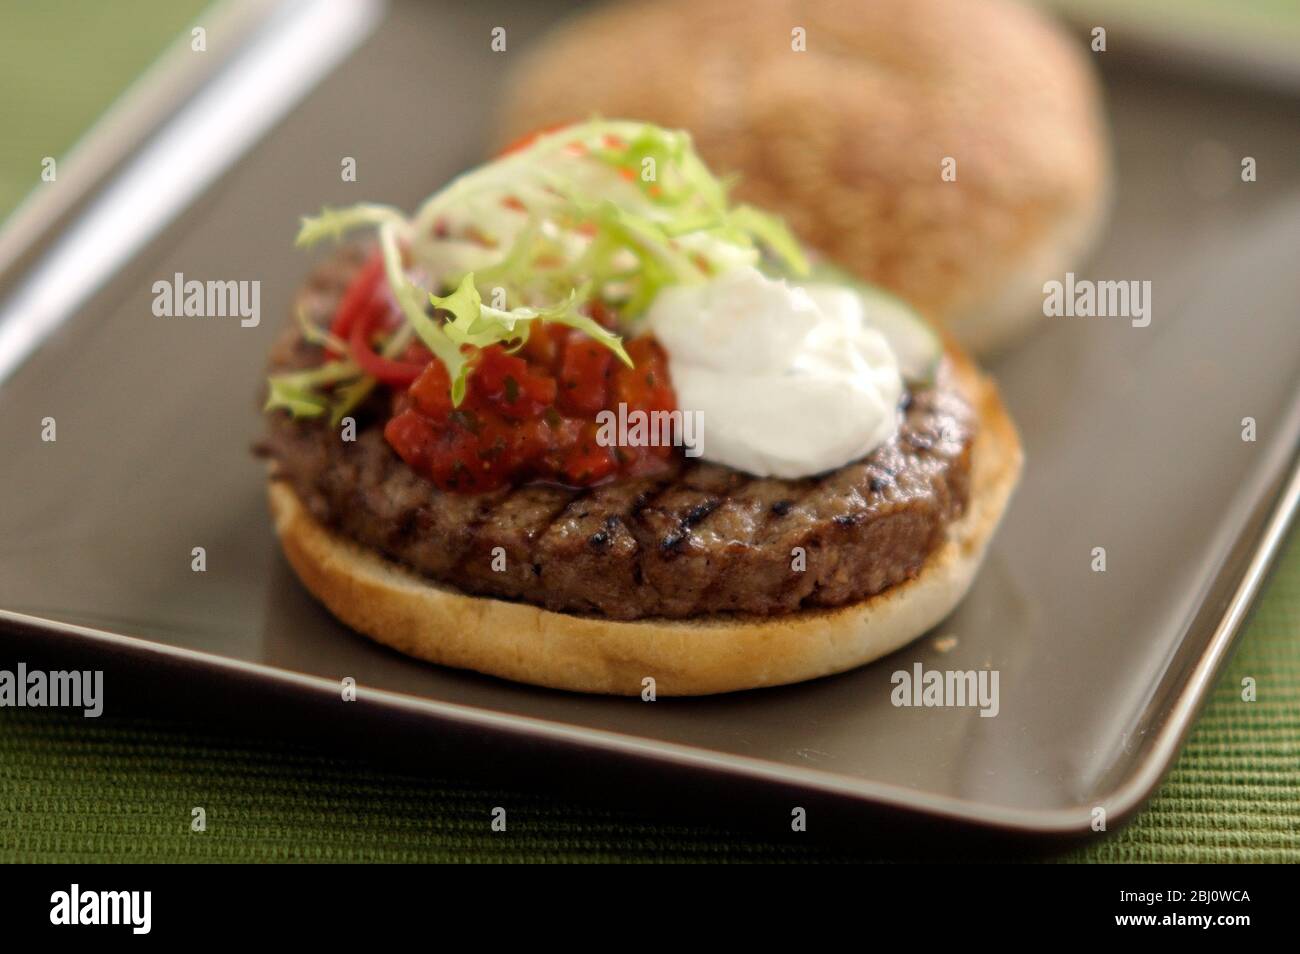 Hamburger vom Grill im Brötchen mit Friseuesalat, Tomatensalsa und saurer Sahne - - Stockfoto